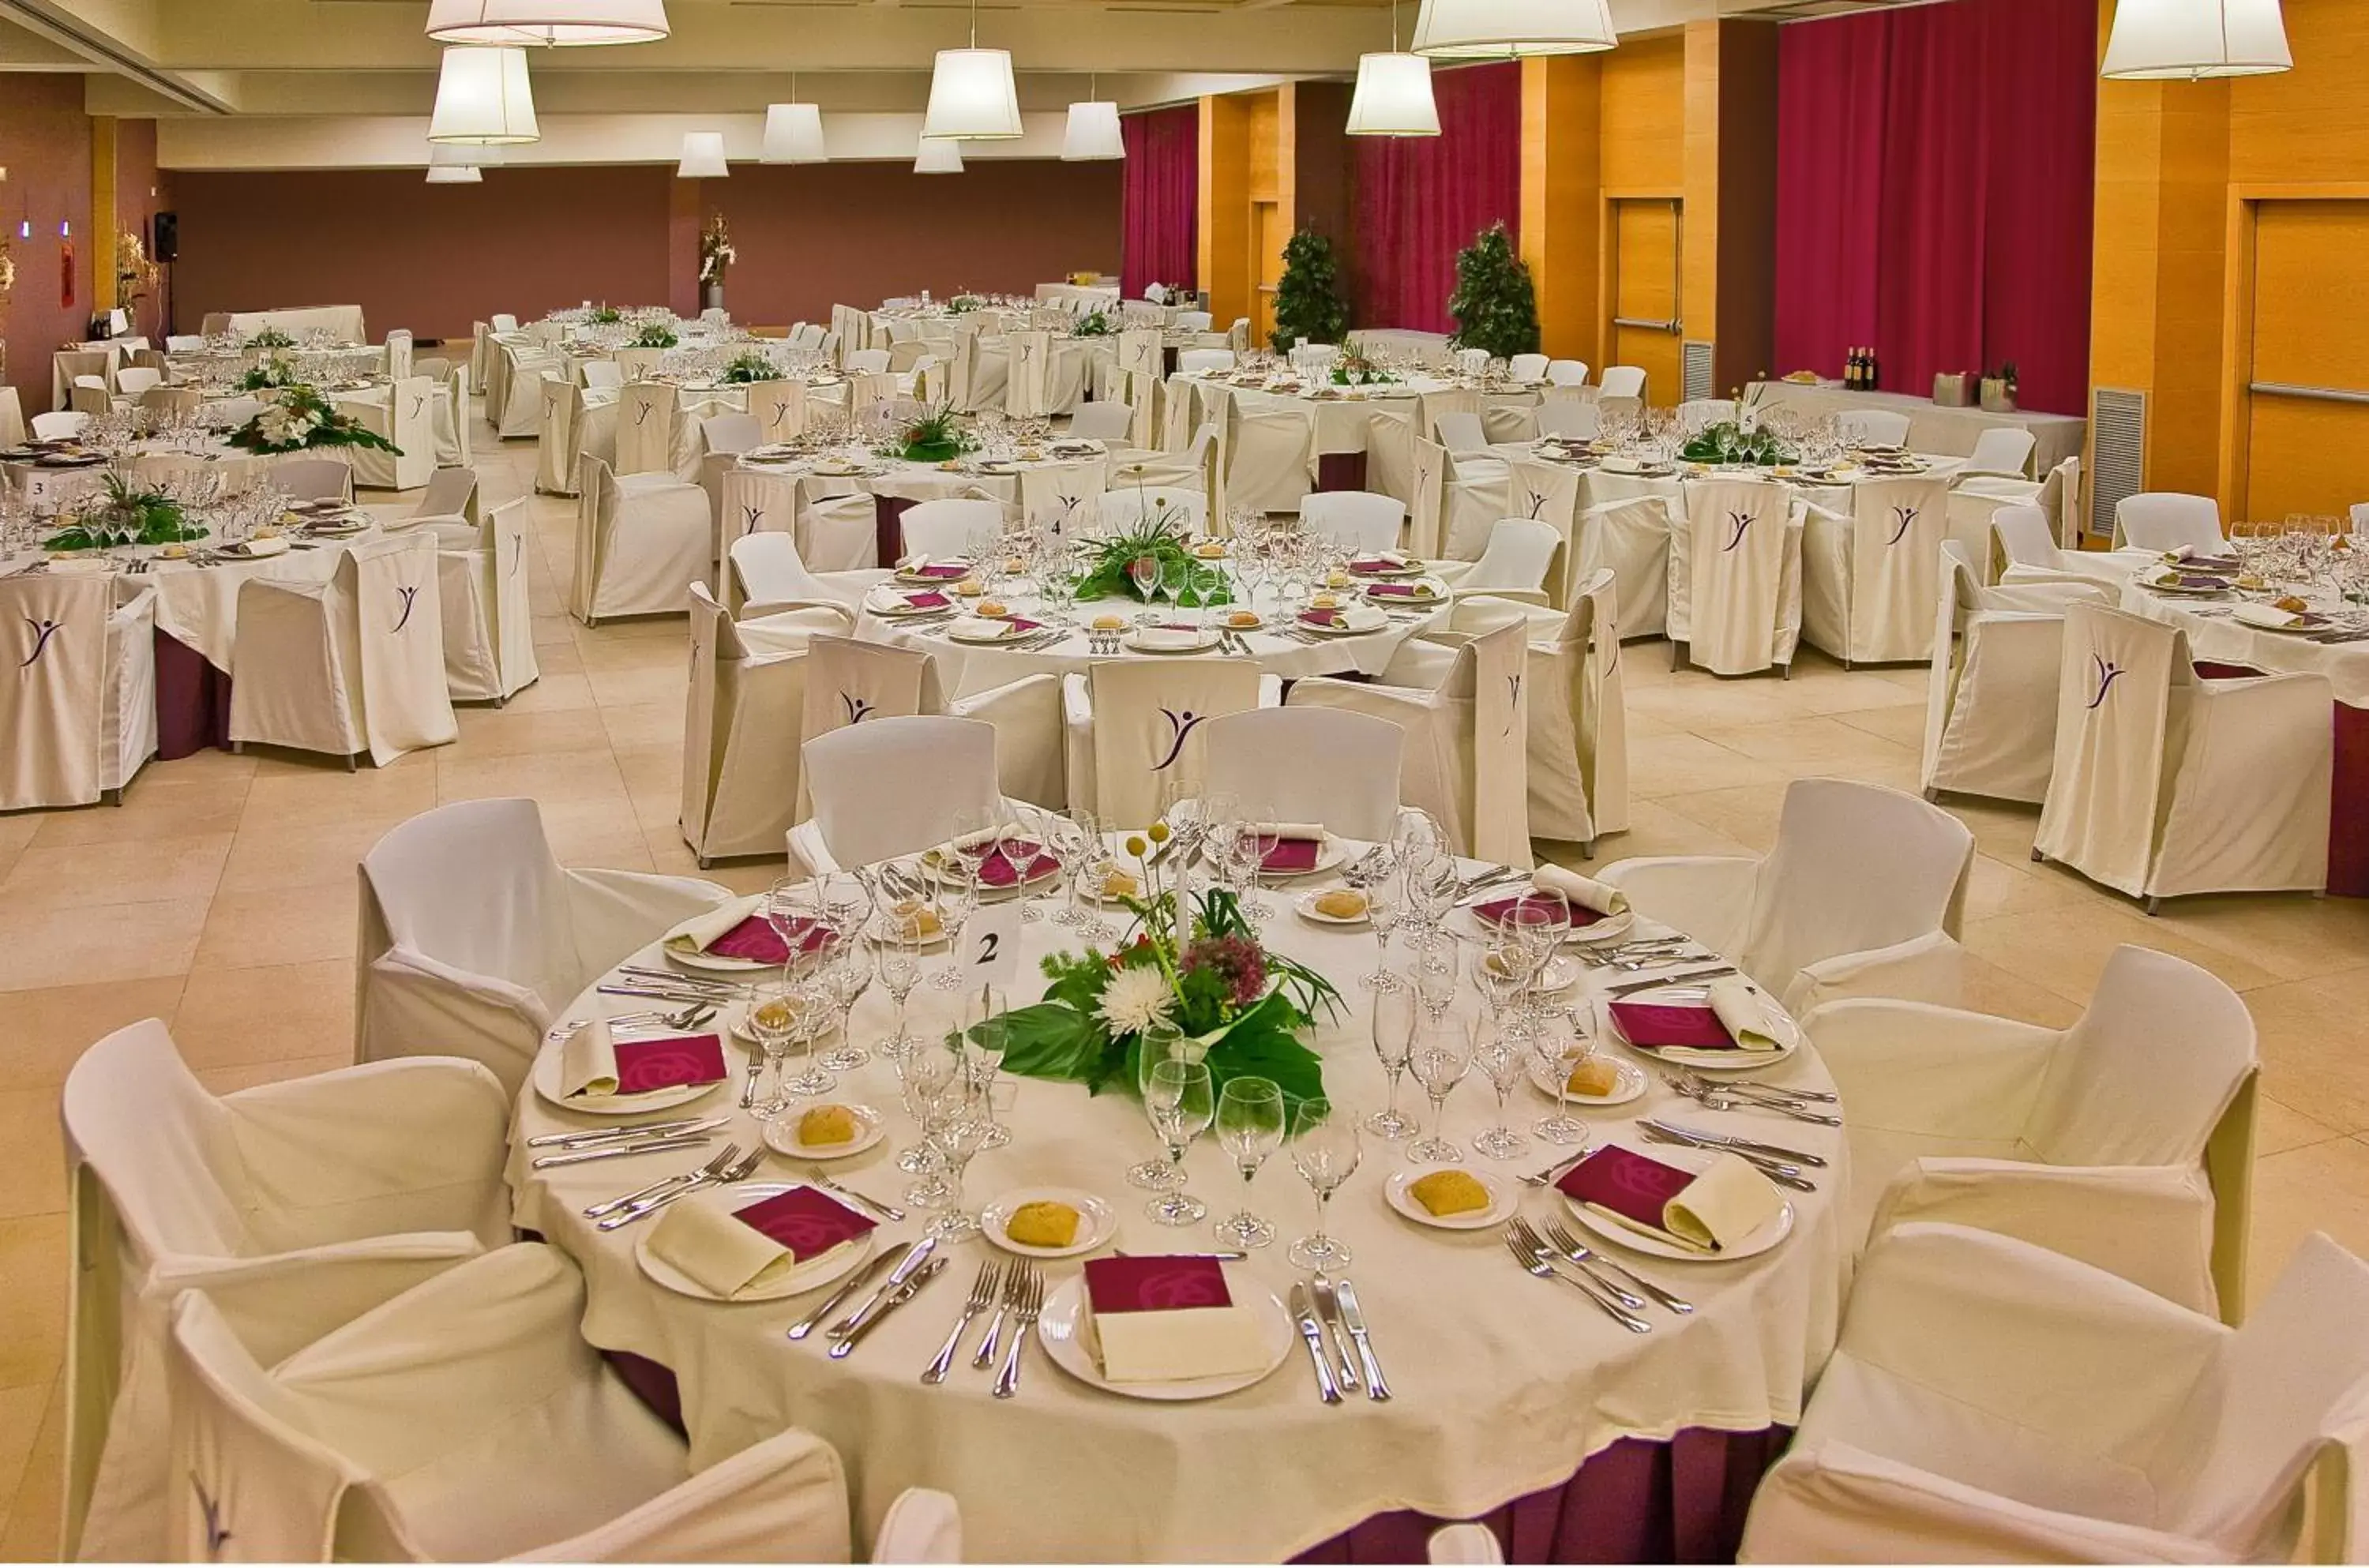 Banquet/Function facilities, Banquet Facilities in Silken Puerta Valencia